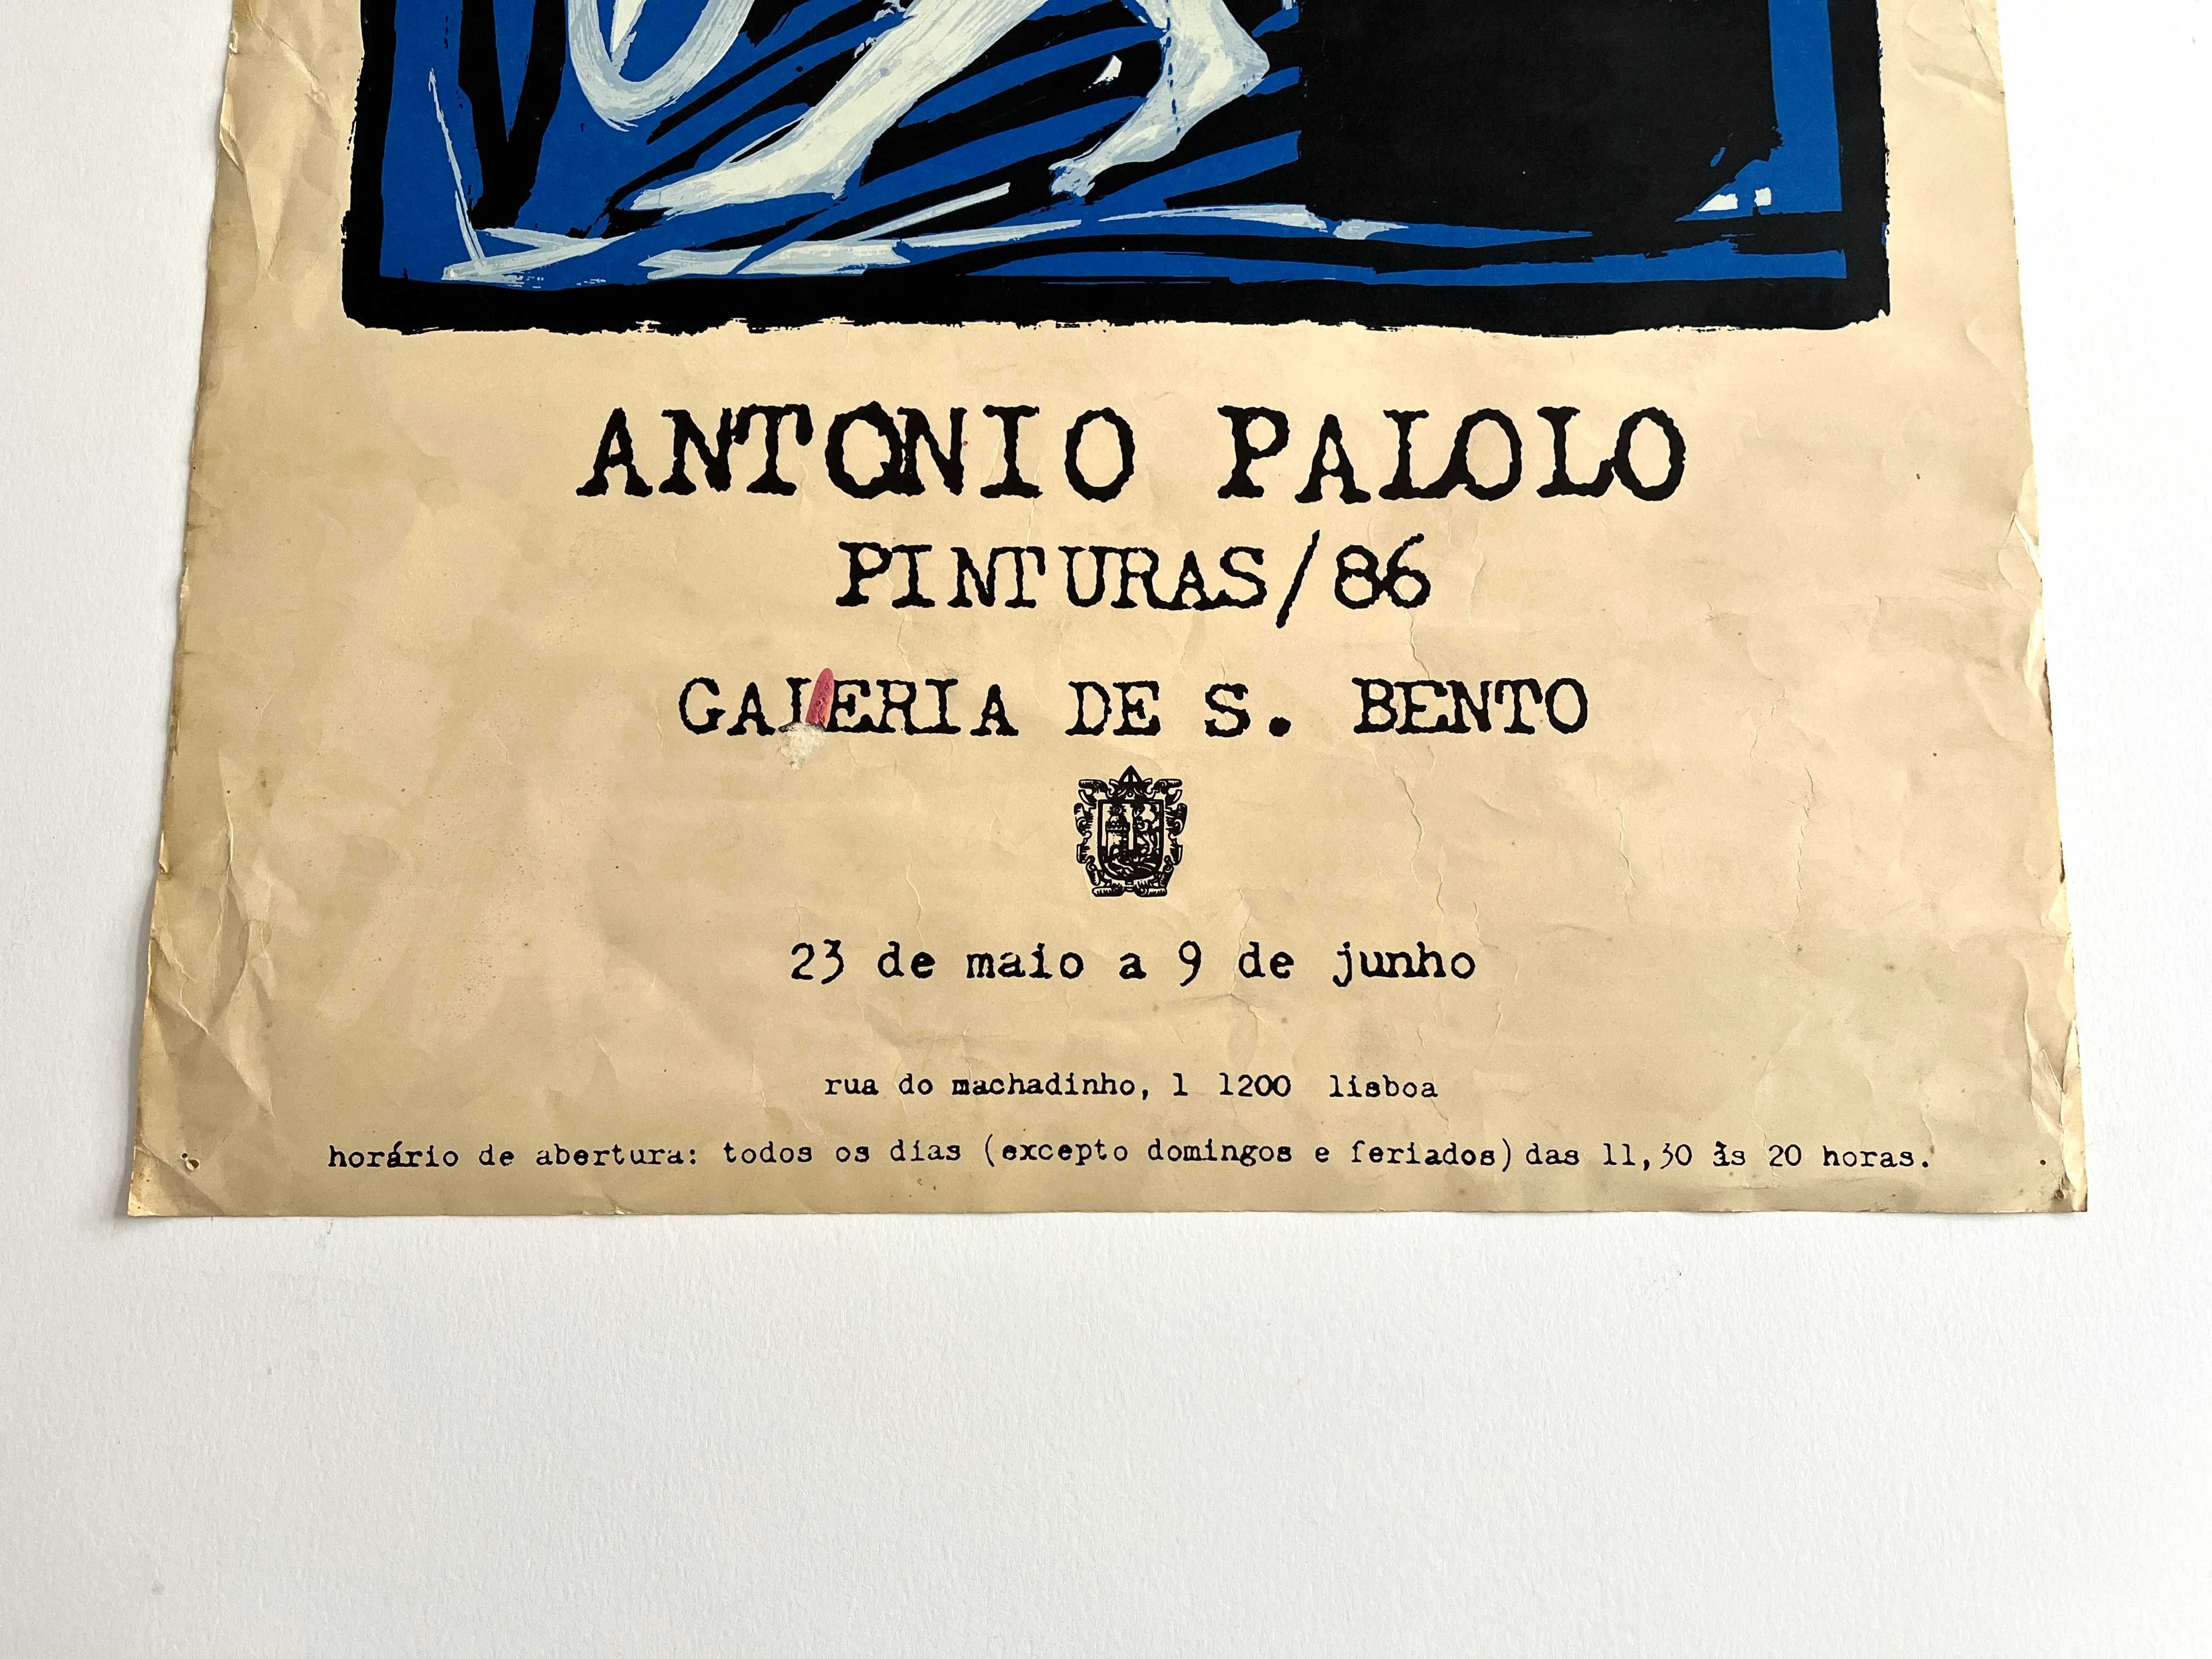 Cartaz da exposição António Palolo Galeria de S. Bento 1986 Lisboa